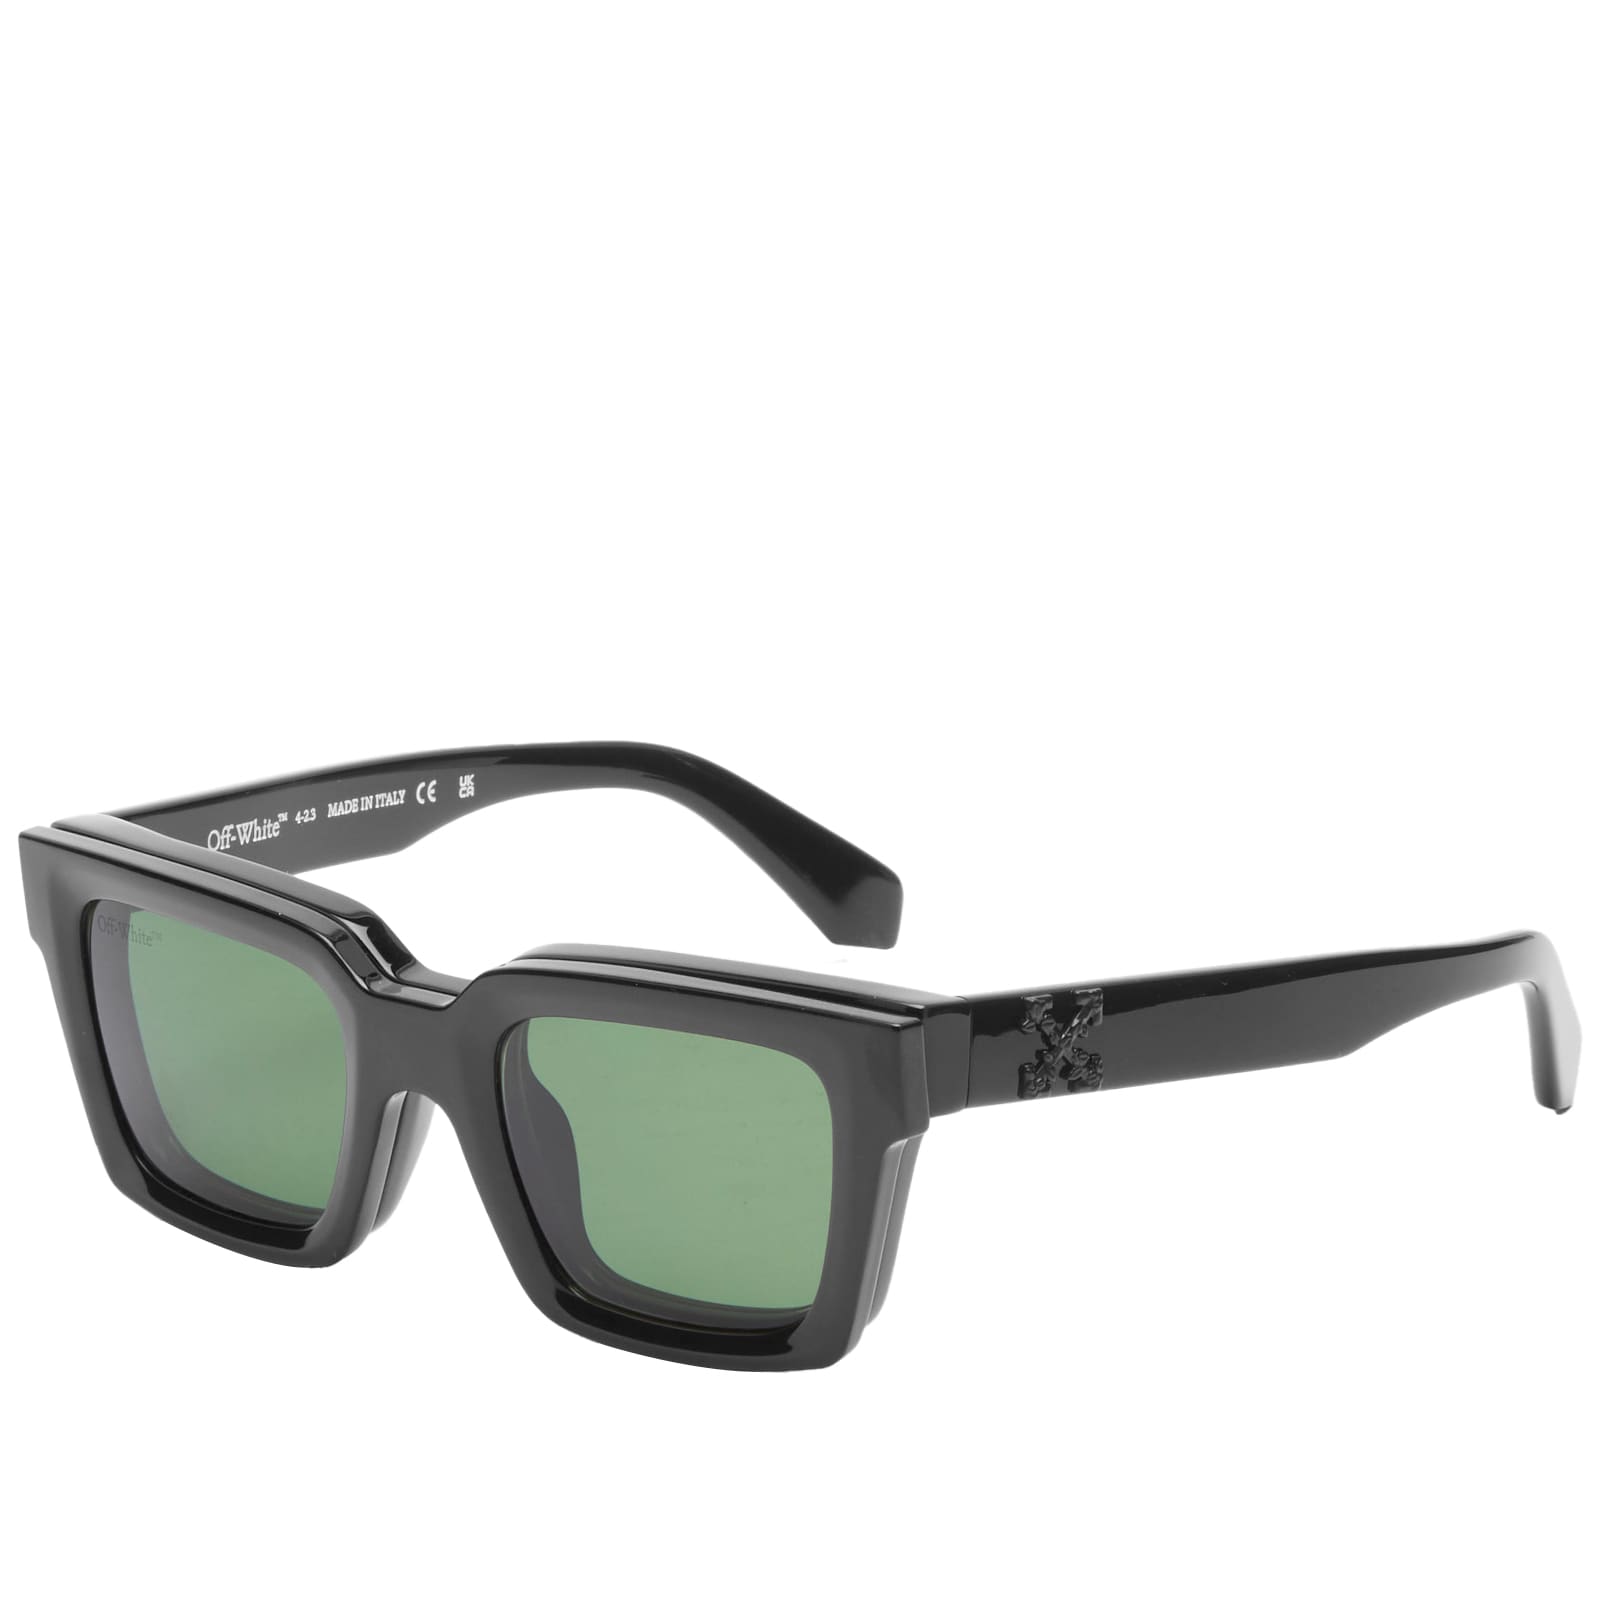 Солнцезащитные очки Off-White Clip On, цвет Black & Green